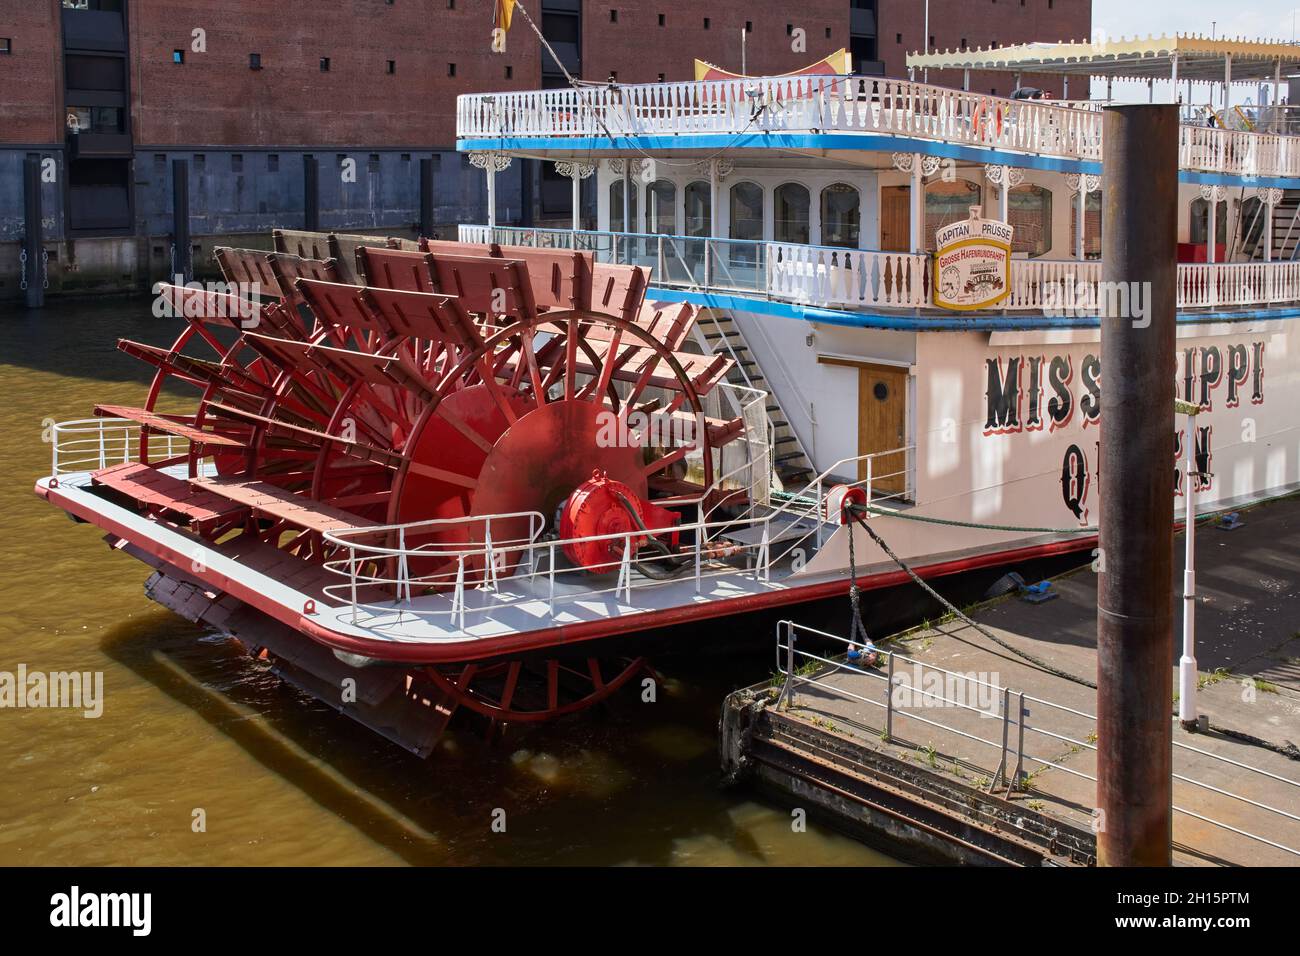 Le bateau à aubes Mississippi Queen se trouve sur le quai en face de l'Elbphilharmonie dans la ville de HafenCity, en Allemagne, par une journée ensoleillée. Banque D'Images